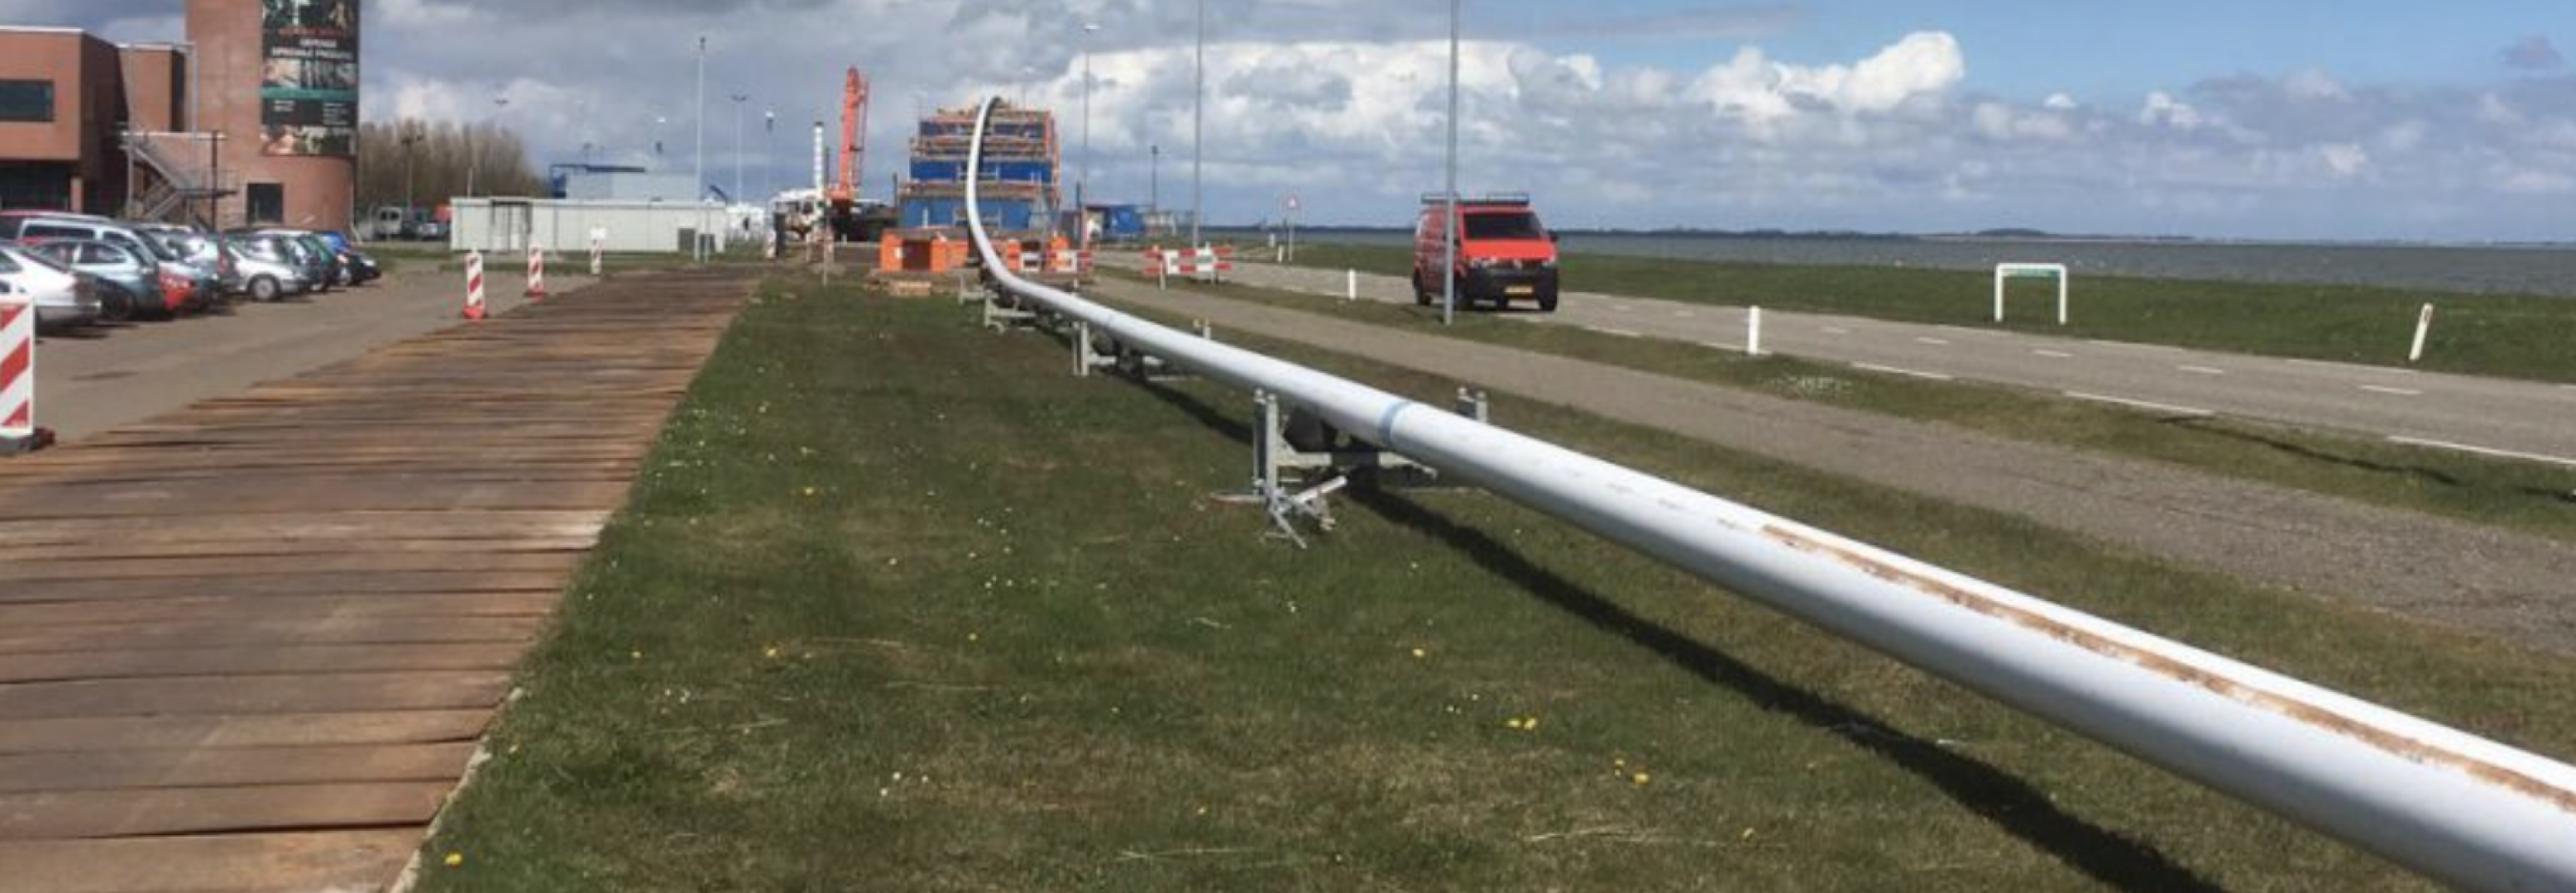 Aanleg nieuwe waterleiding Den Helder – Texel met PUPP Lining